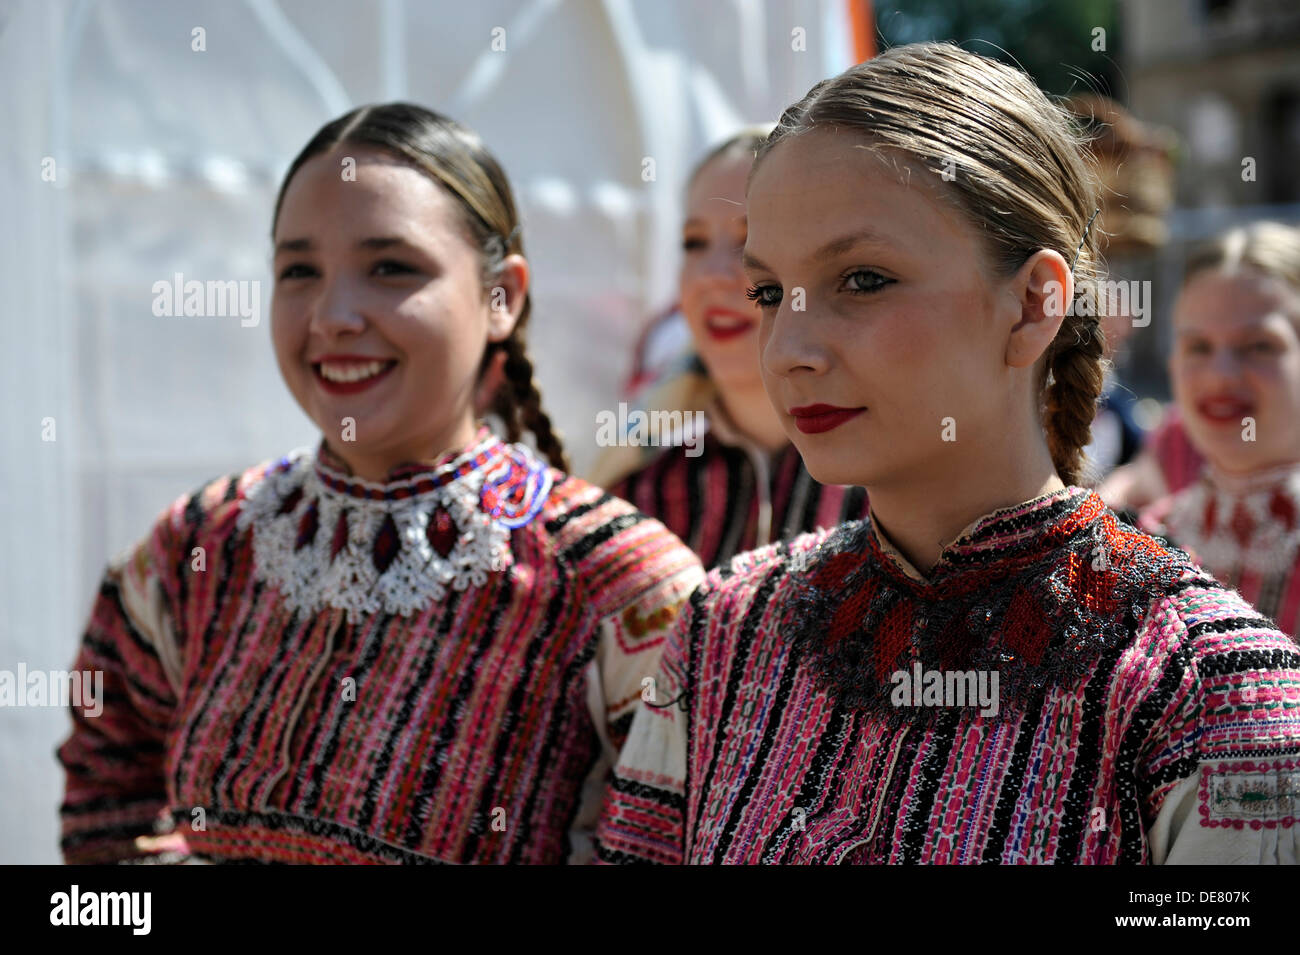 Mitglieder von Folkloregruppen Bistra in Kroatien Folk Kostüm während des 47. Folklore-Festivals in Zagreb, Kroatien am Juli 18,2013 Stockfoto